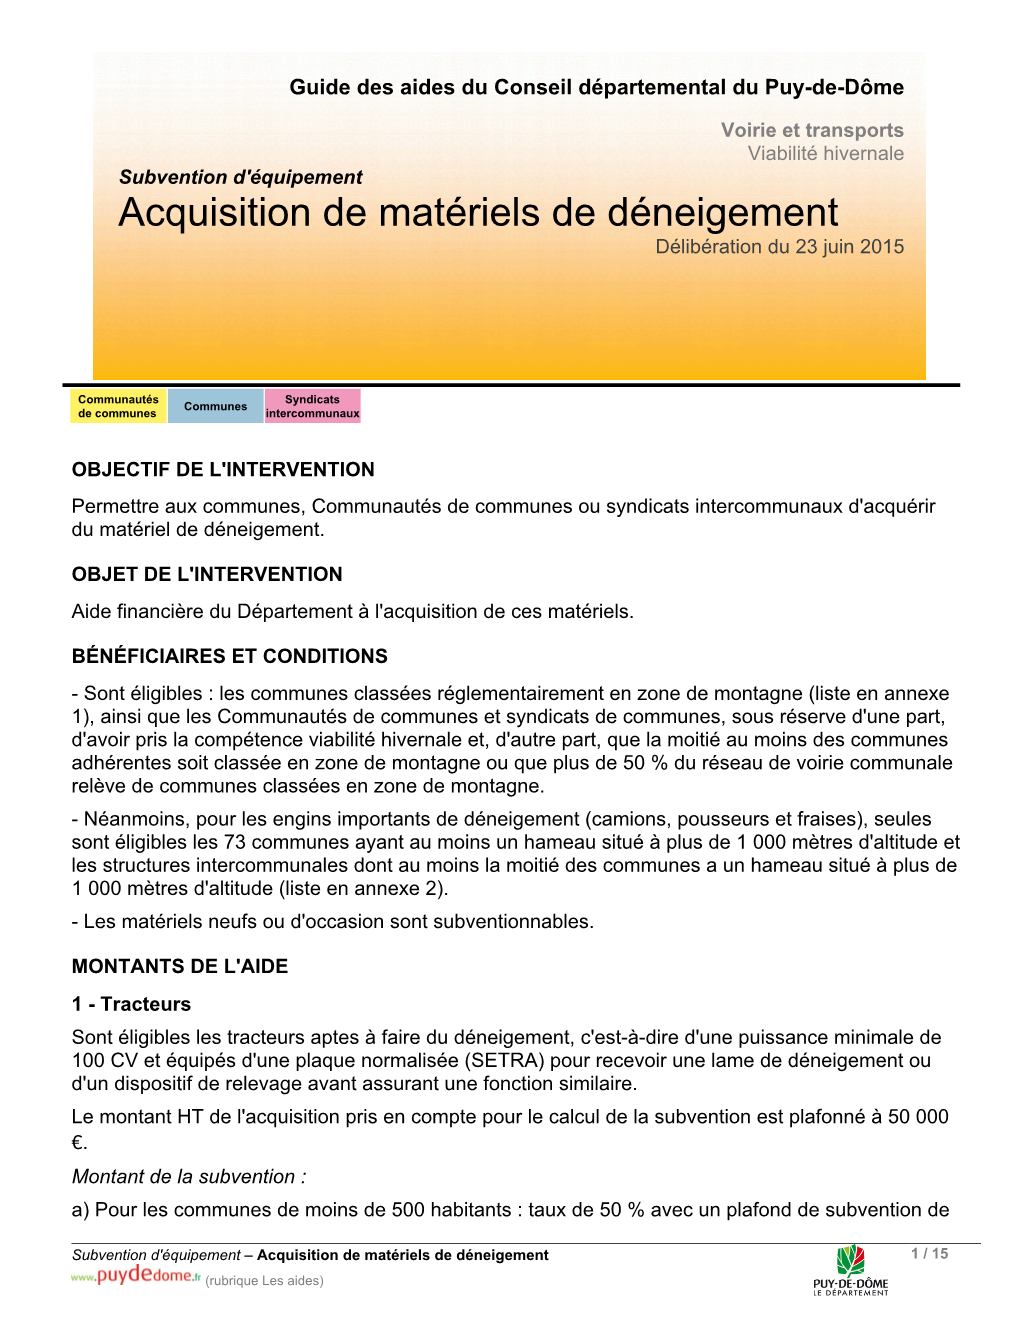 Acquisition De Matériels De Déneigement Délibération Du 23 Juin 2015